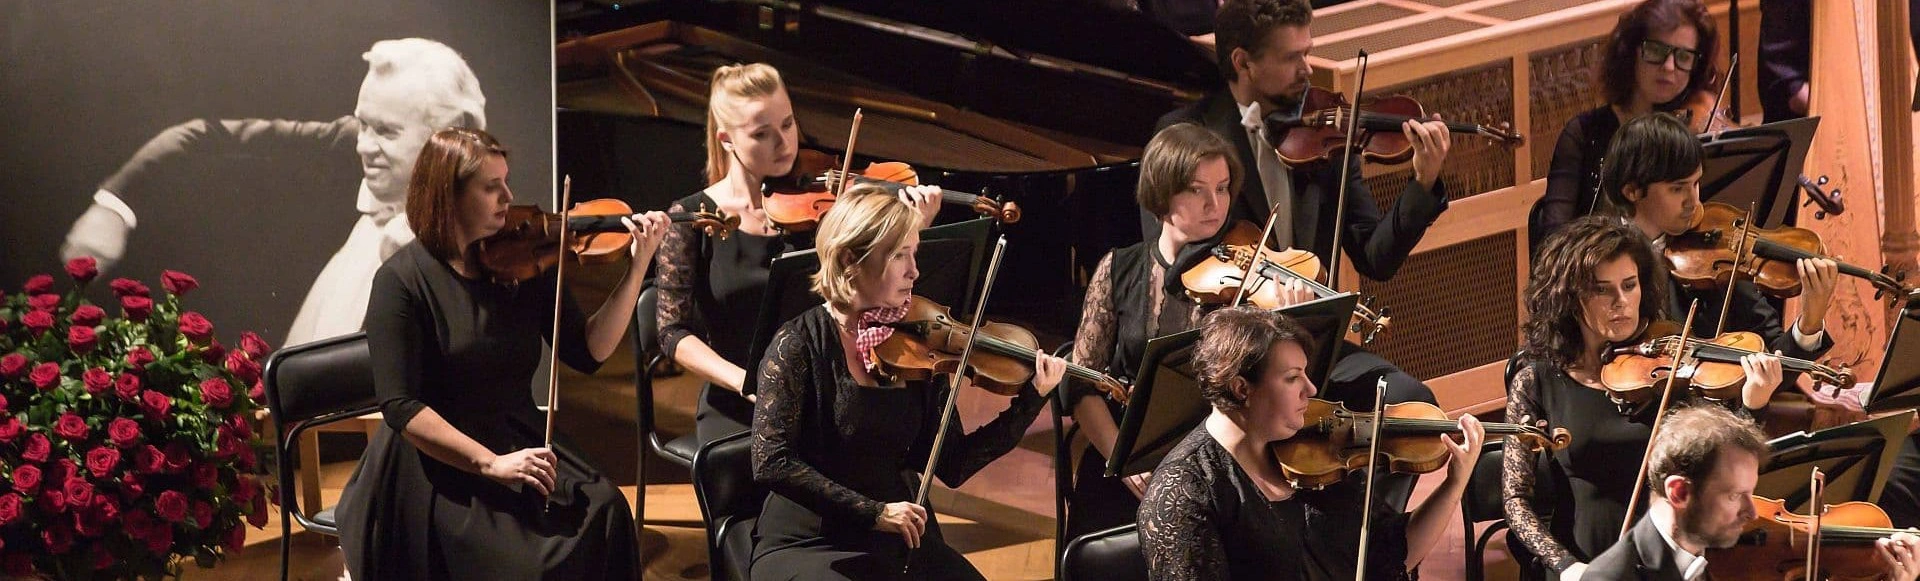 Концерт «Открытие сезона филармонии» ЗКР академический симфонический оркестр филармонии